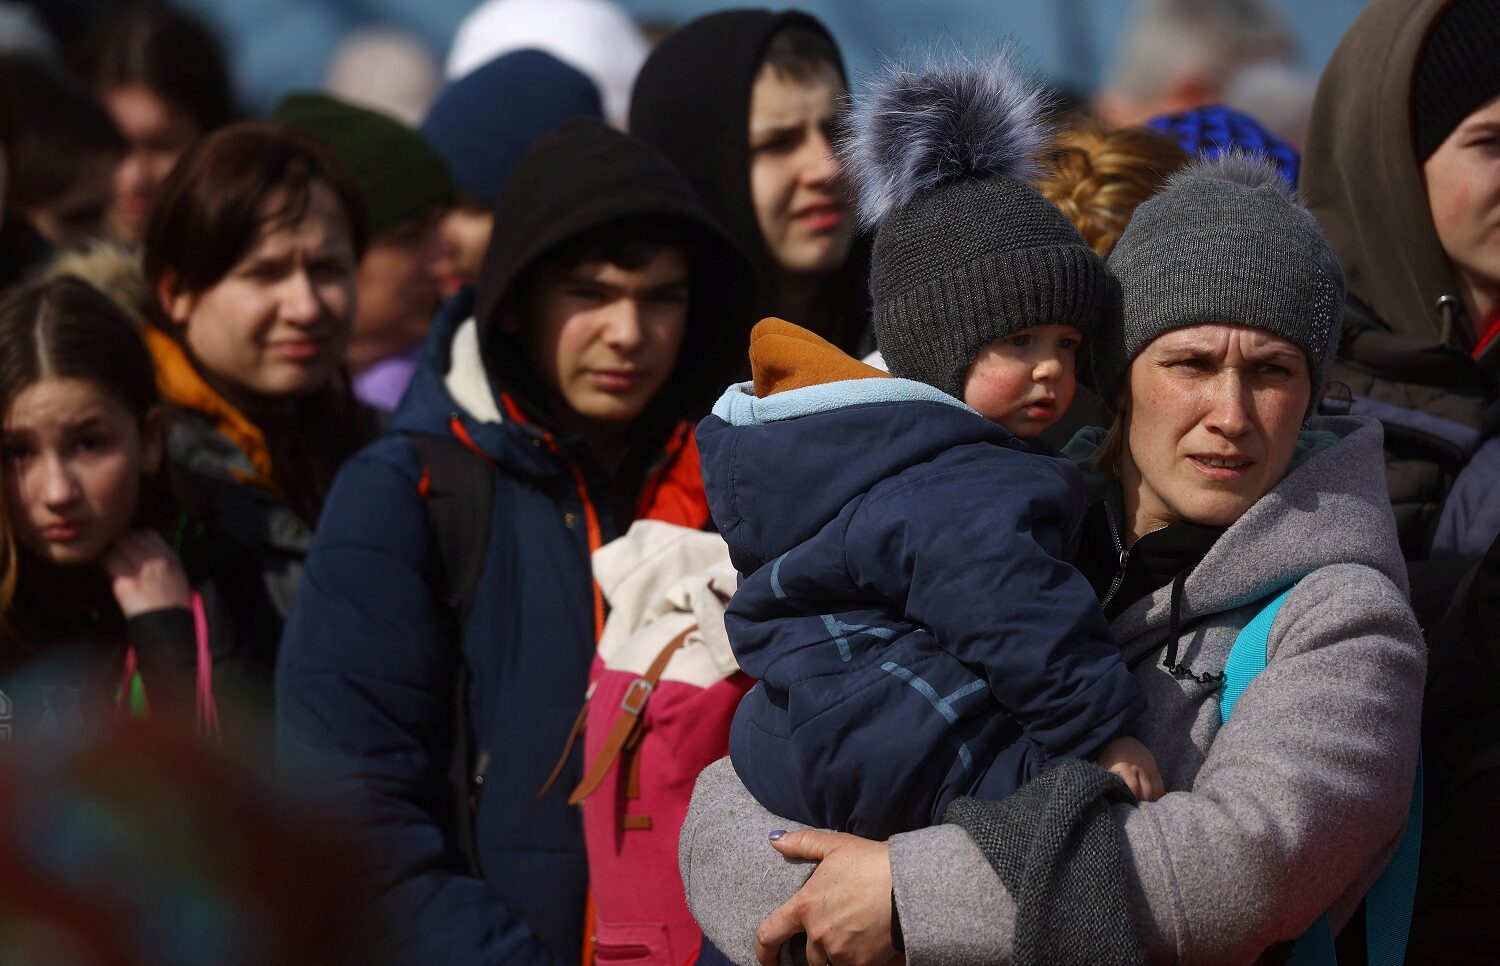 ยูเอ็นชี้ผู้ลี้ภัยหนีสงครามยูเครนทะลุ 2.8 ล้าน